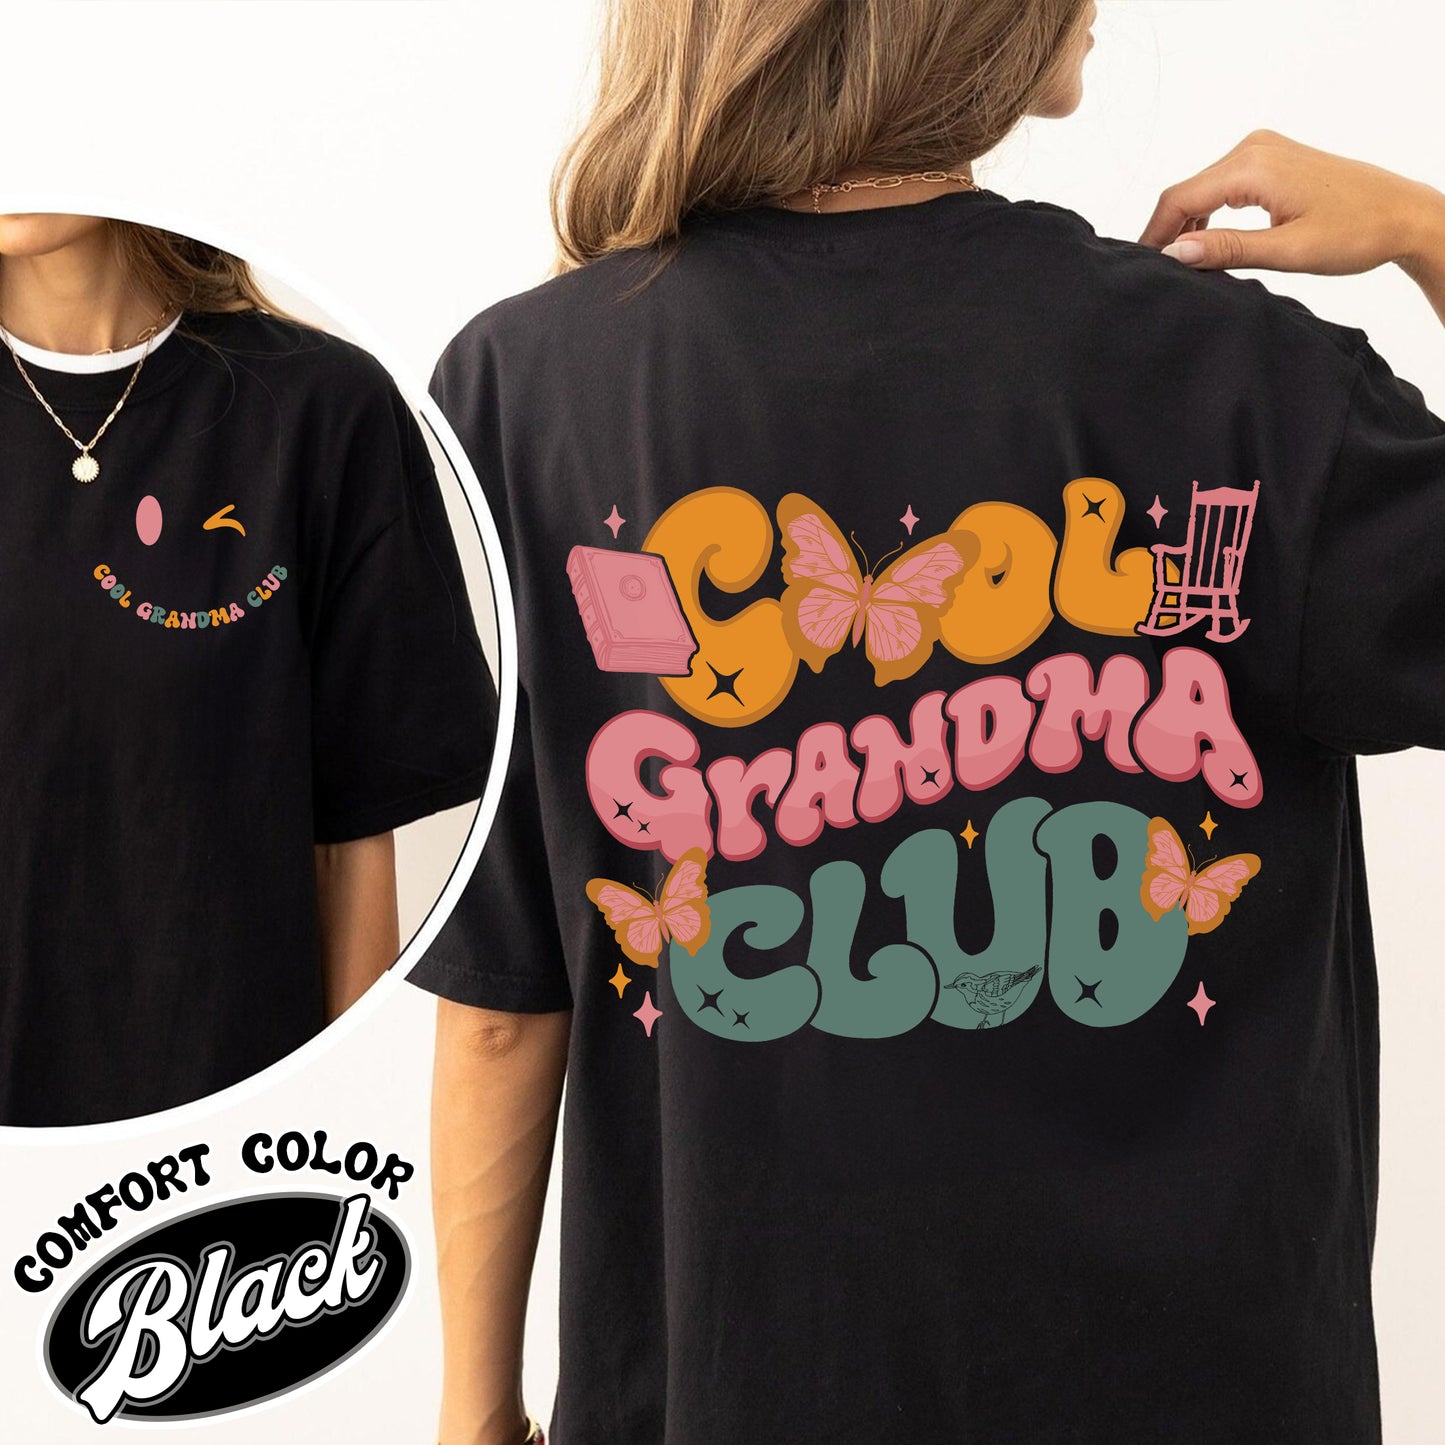 Cool Grandma Club Comfort Color Shirt, In My Cool Grandma Era Shirt,Gifts For Grandma